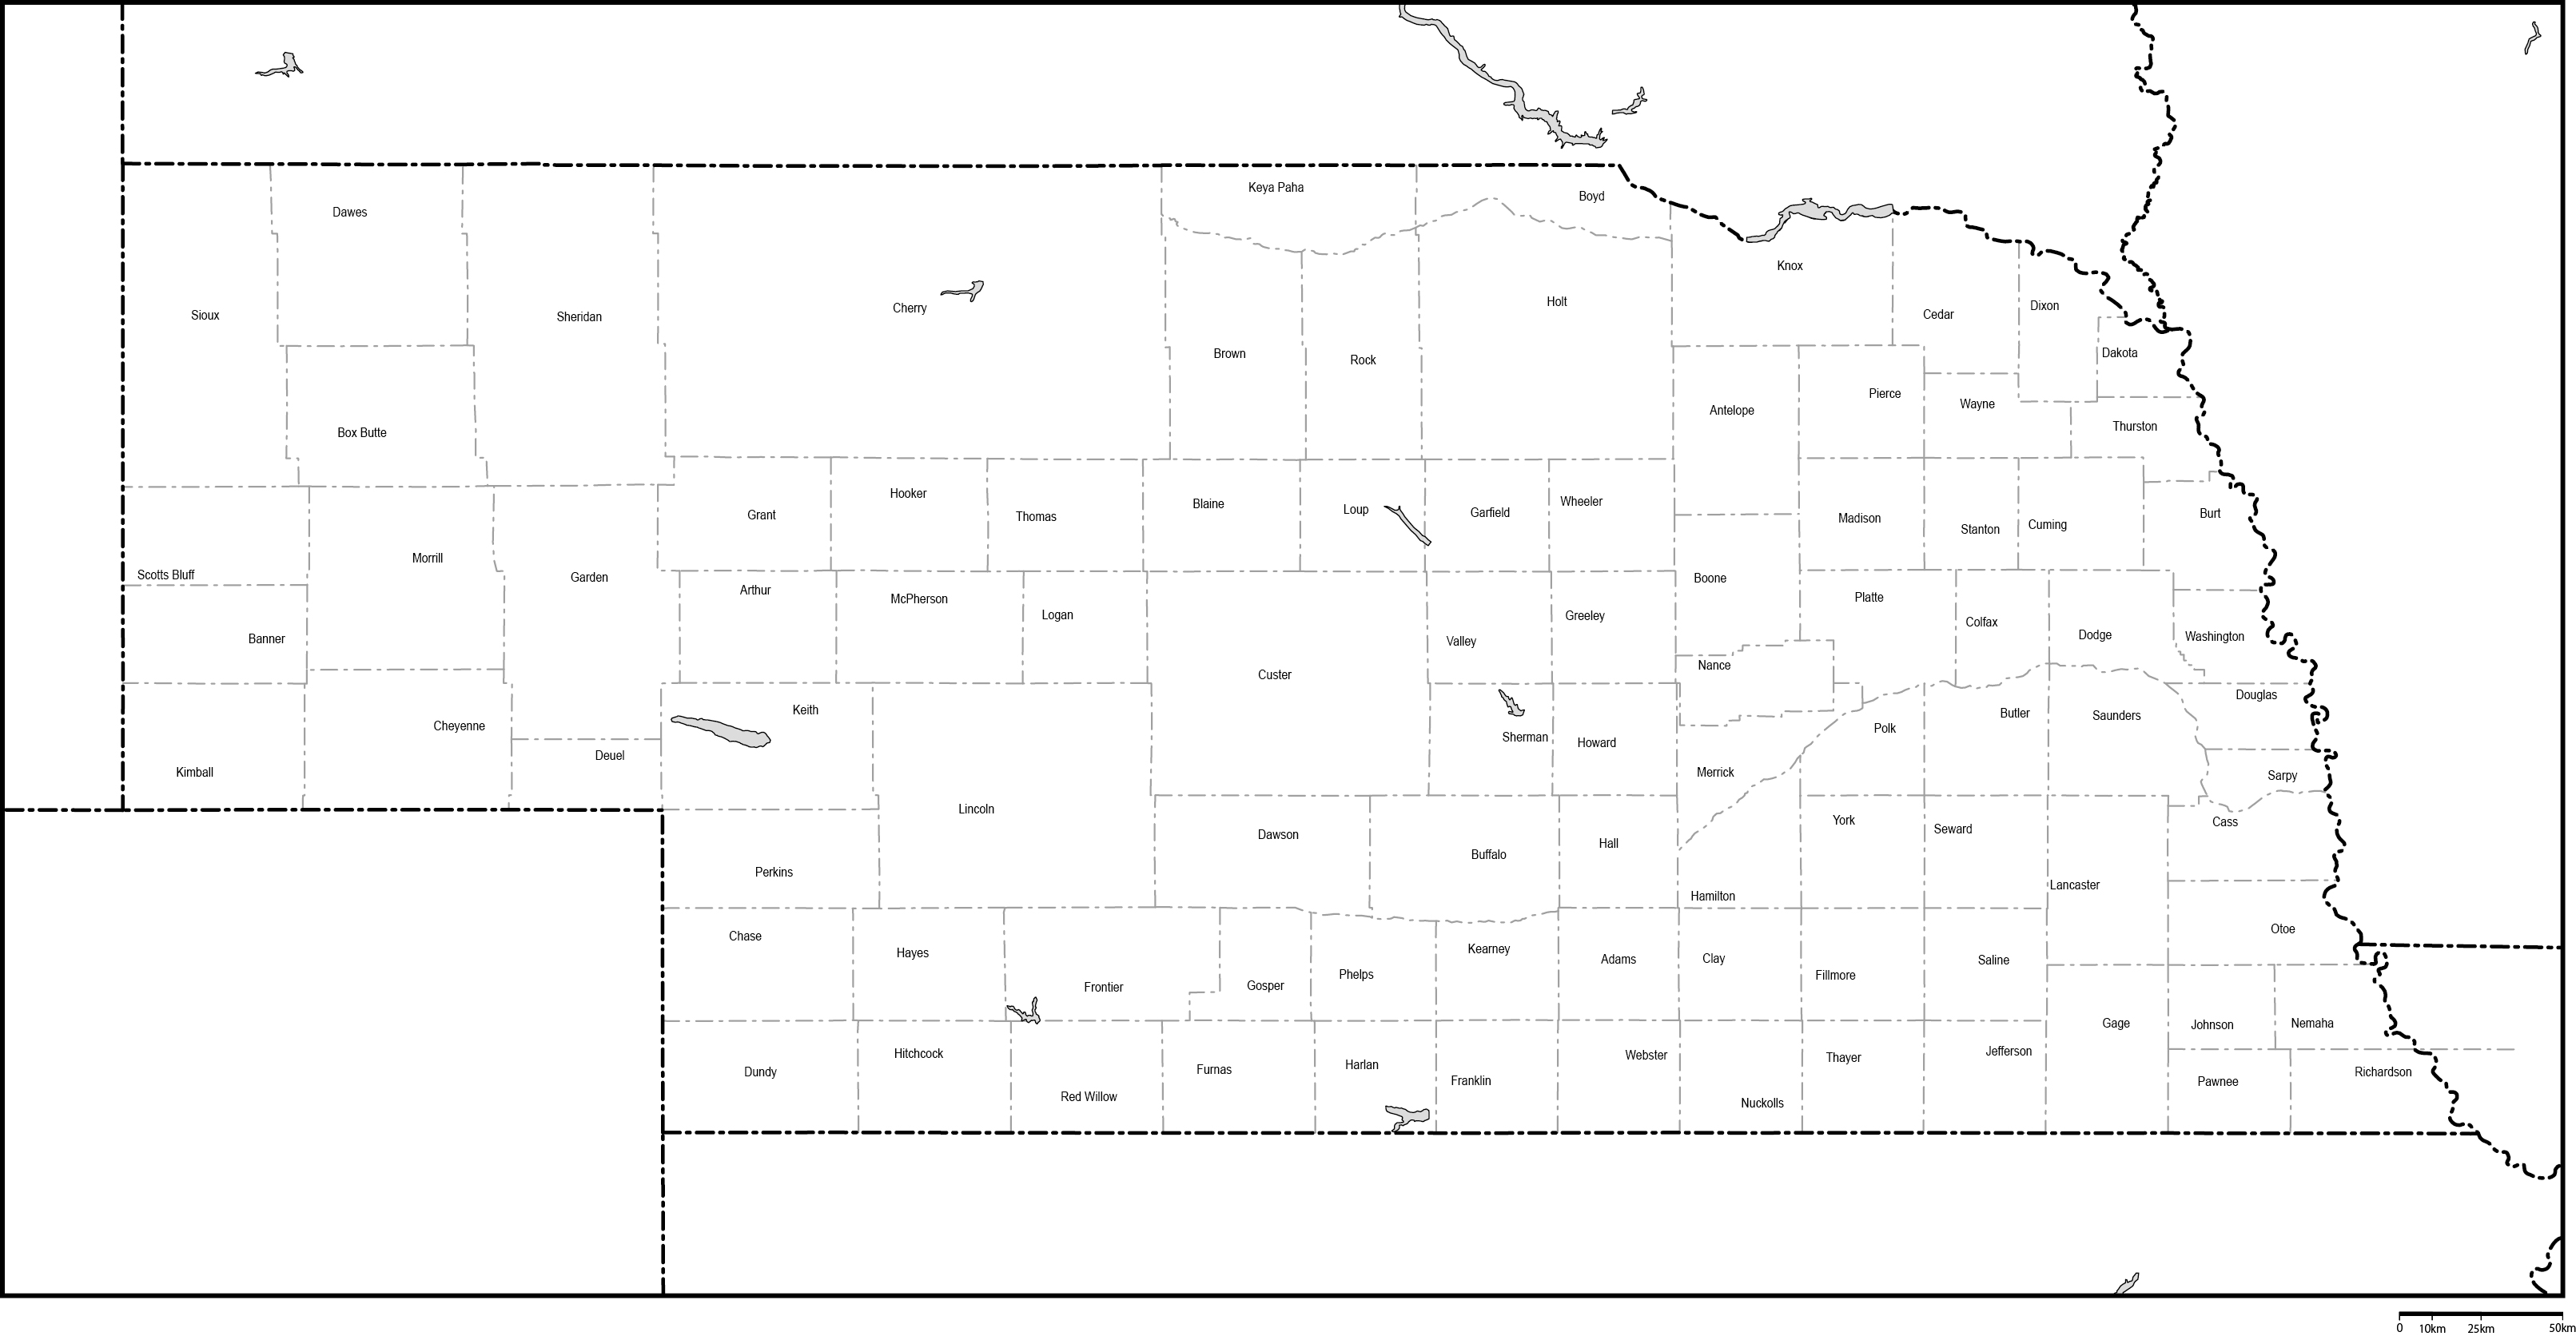 ネブラスカ州郡分け白地図郡名あり(英語)フリーデータの画像